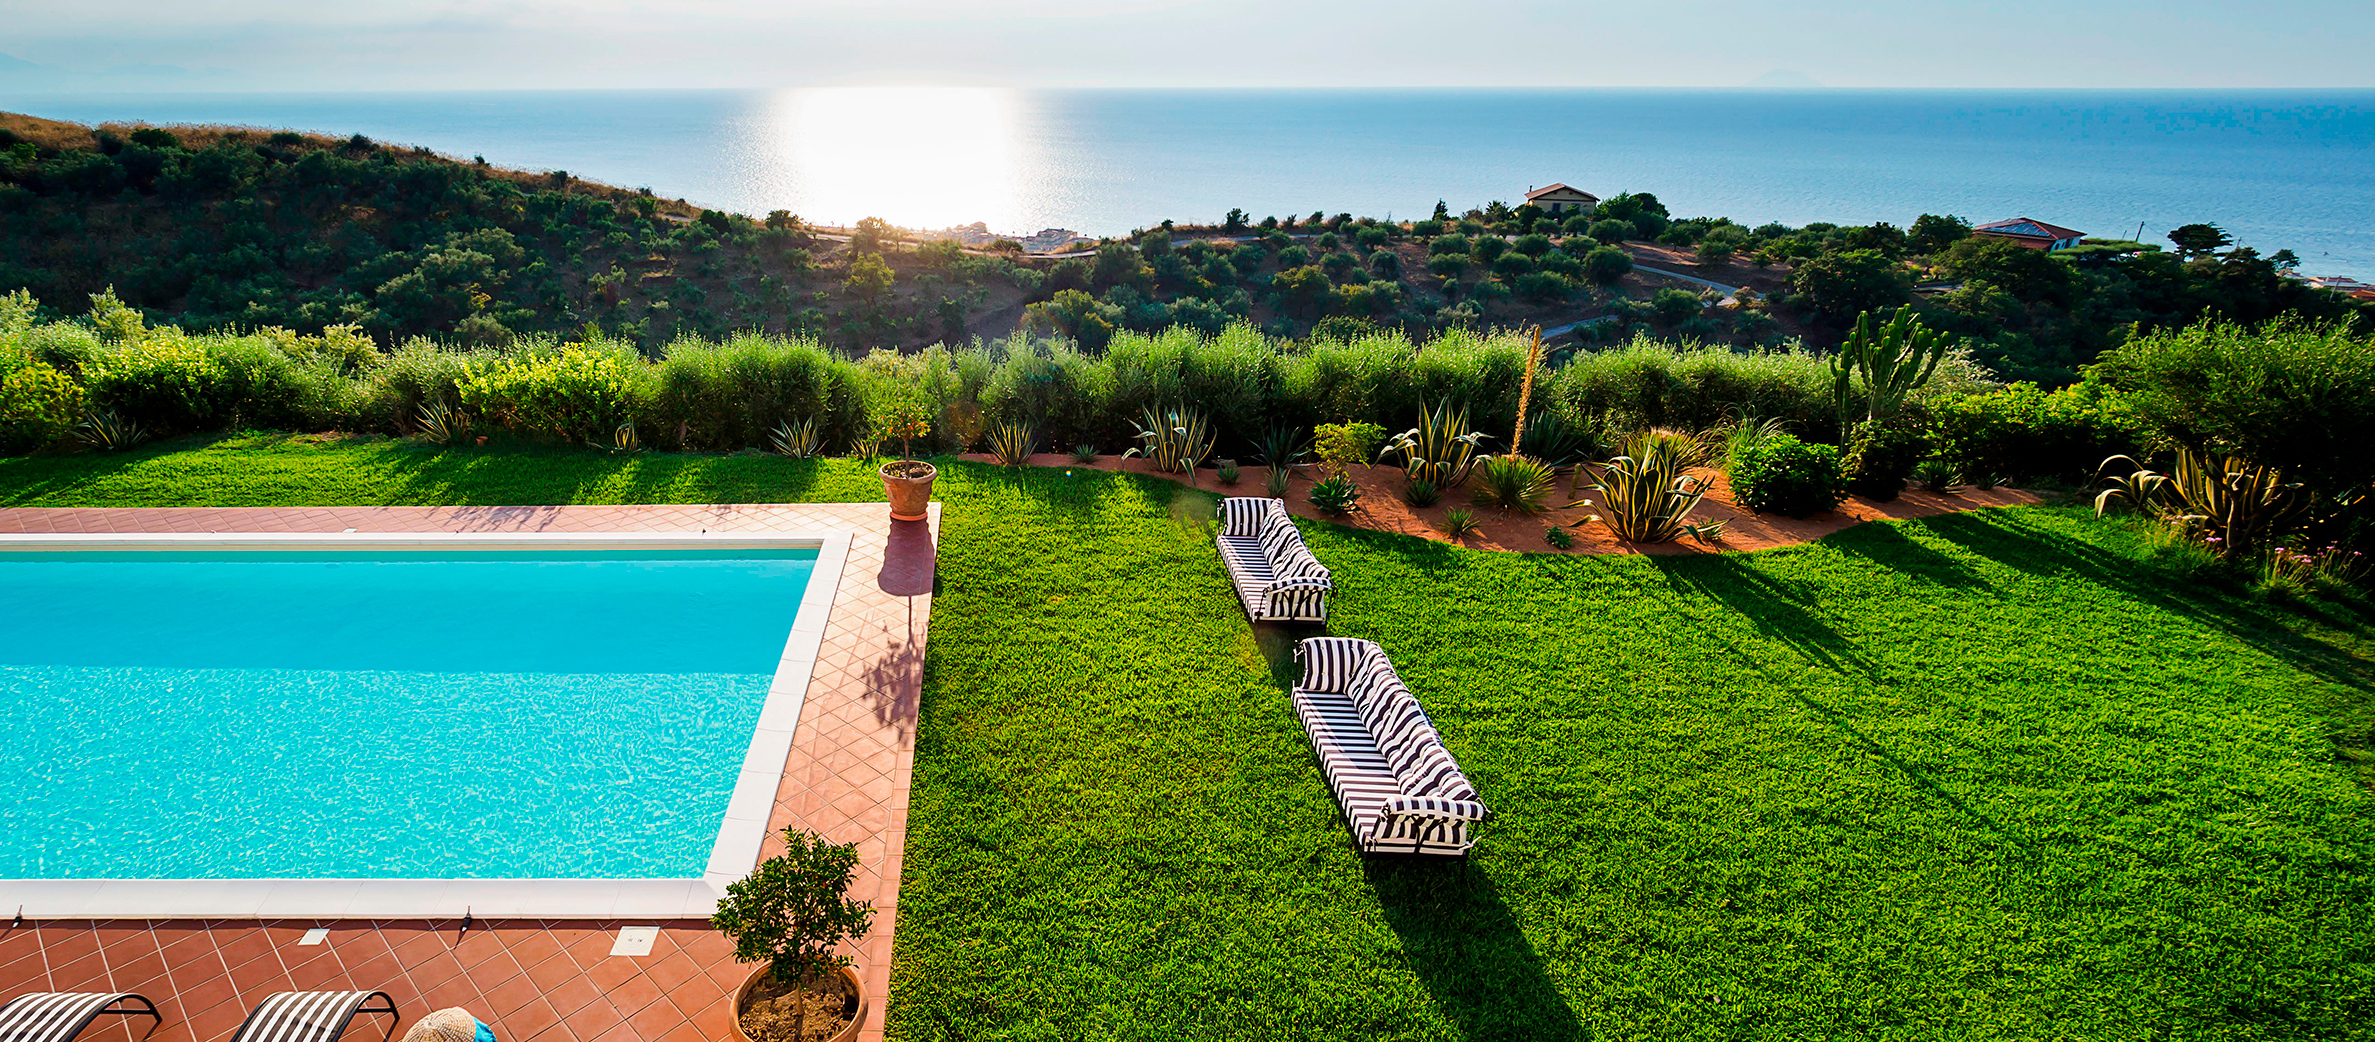 Estella, Capo D'Orlando, Sicily - Villa with pool for rent - 62